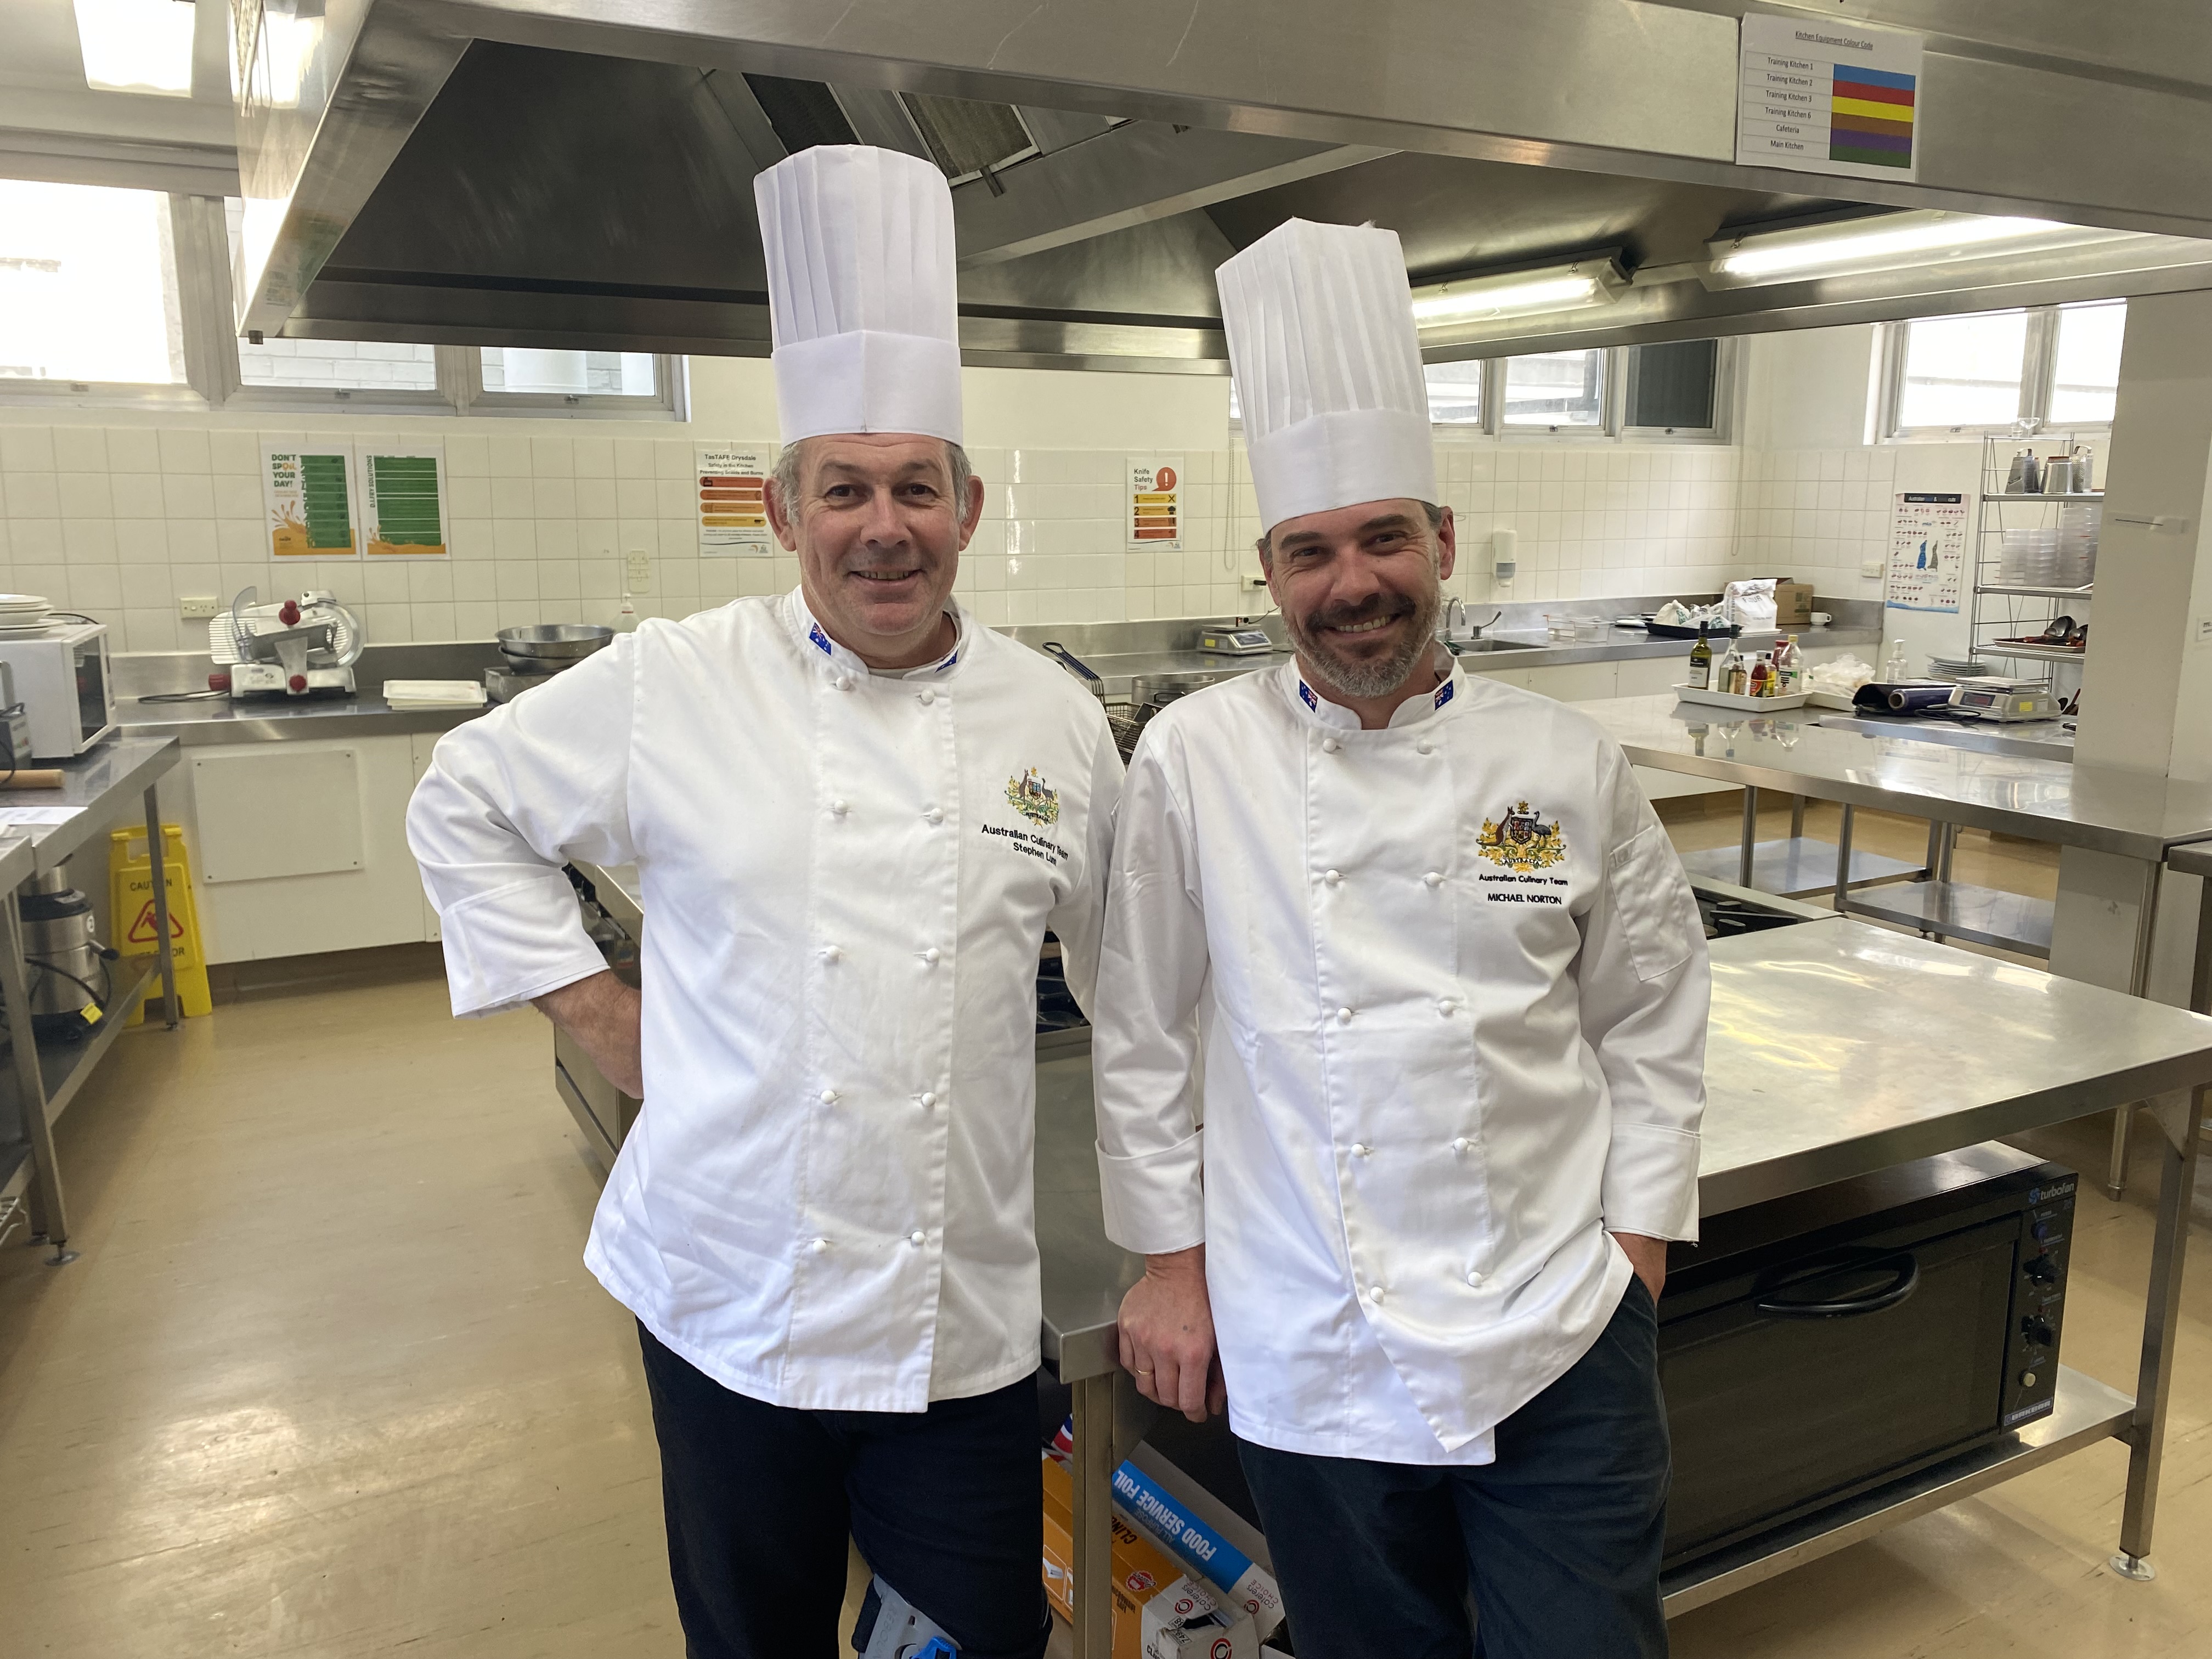 TasTAFE Cookery Teachers Stephen Lunn and Michael Norton